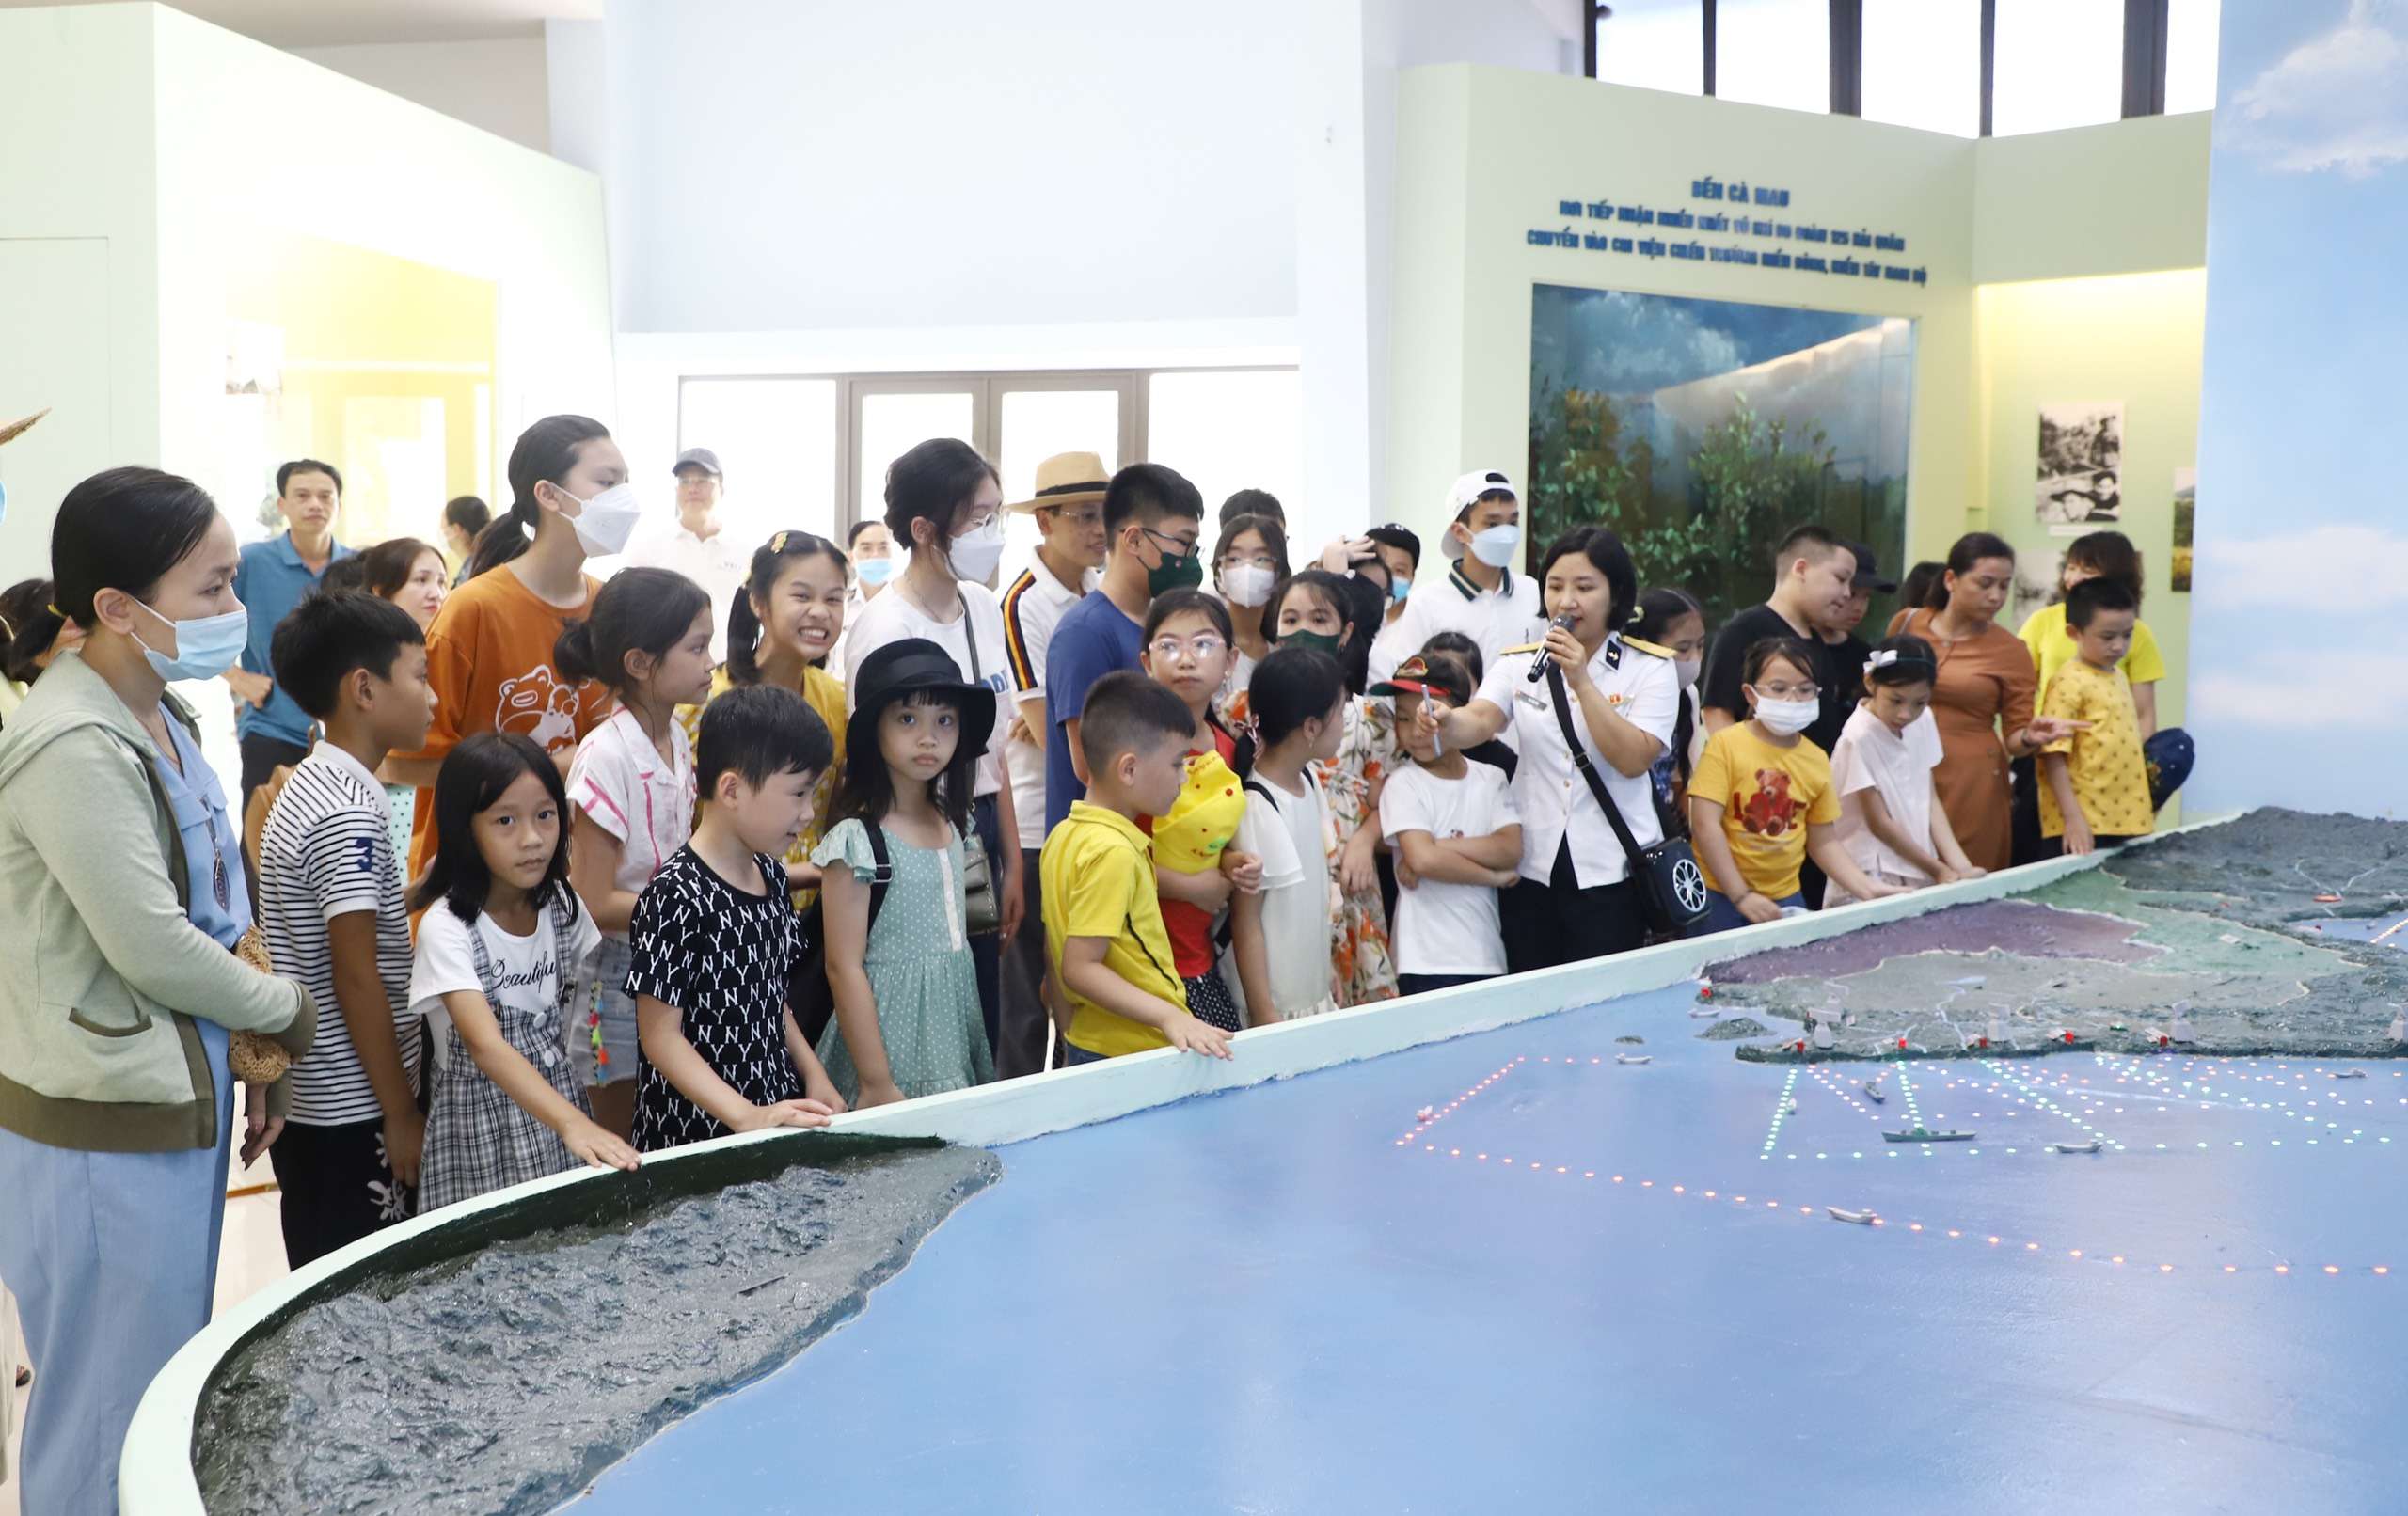 Cục Chính trị tổ chức cho các cháu học sinh giỏi tham quan Bảo tàng Hải quân